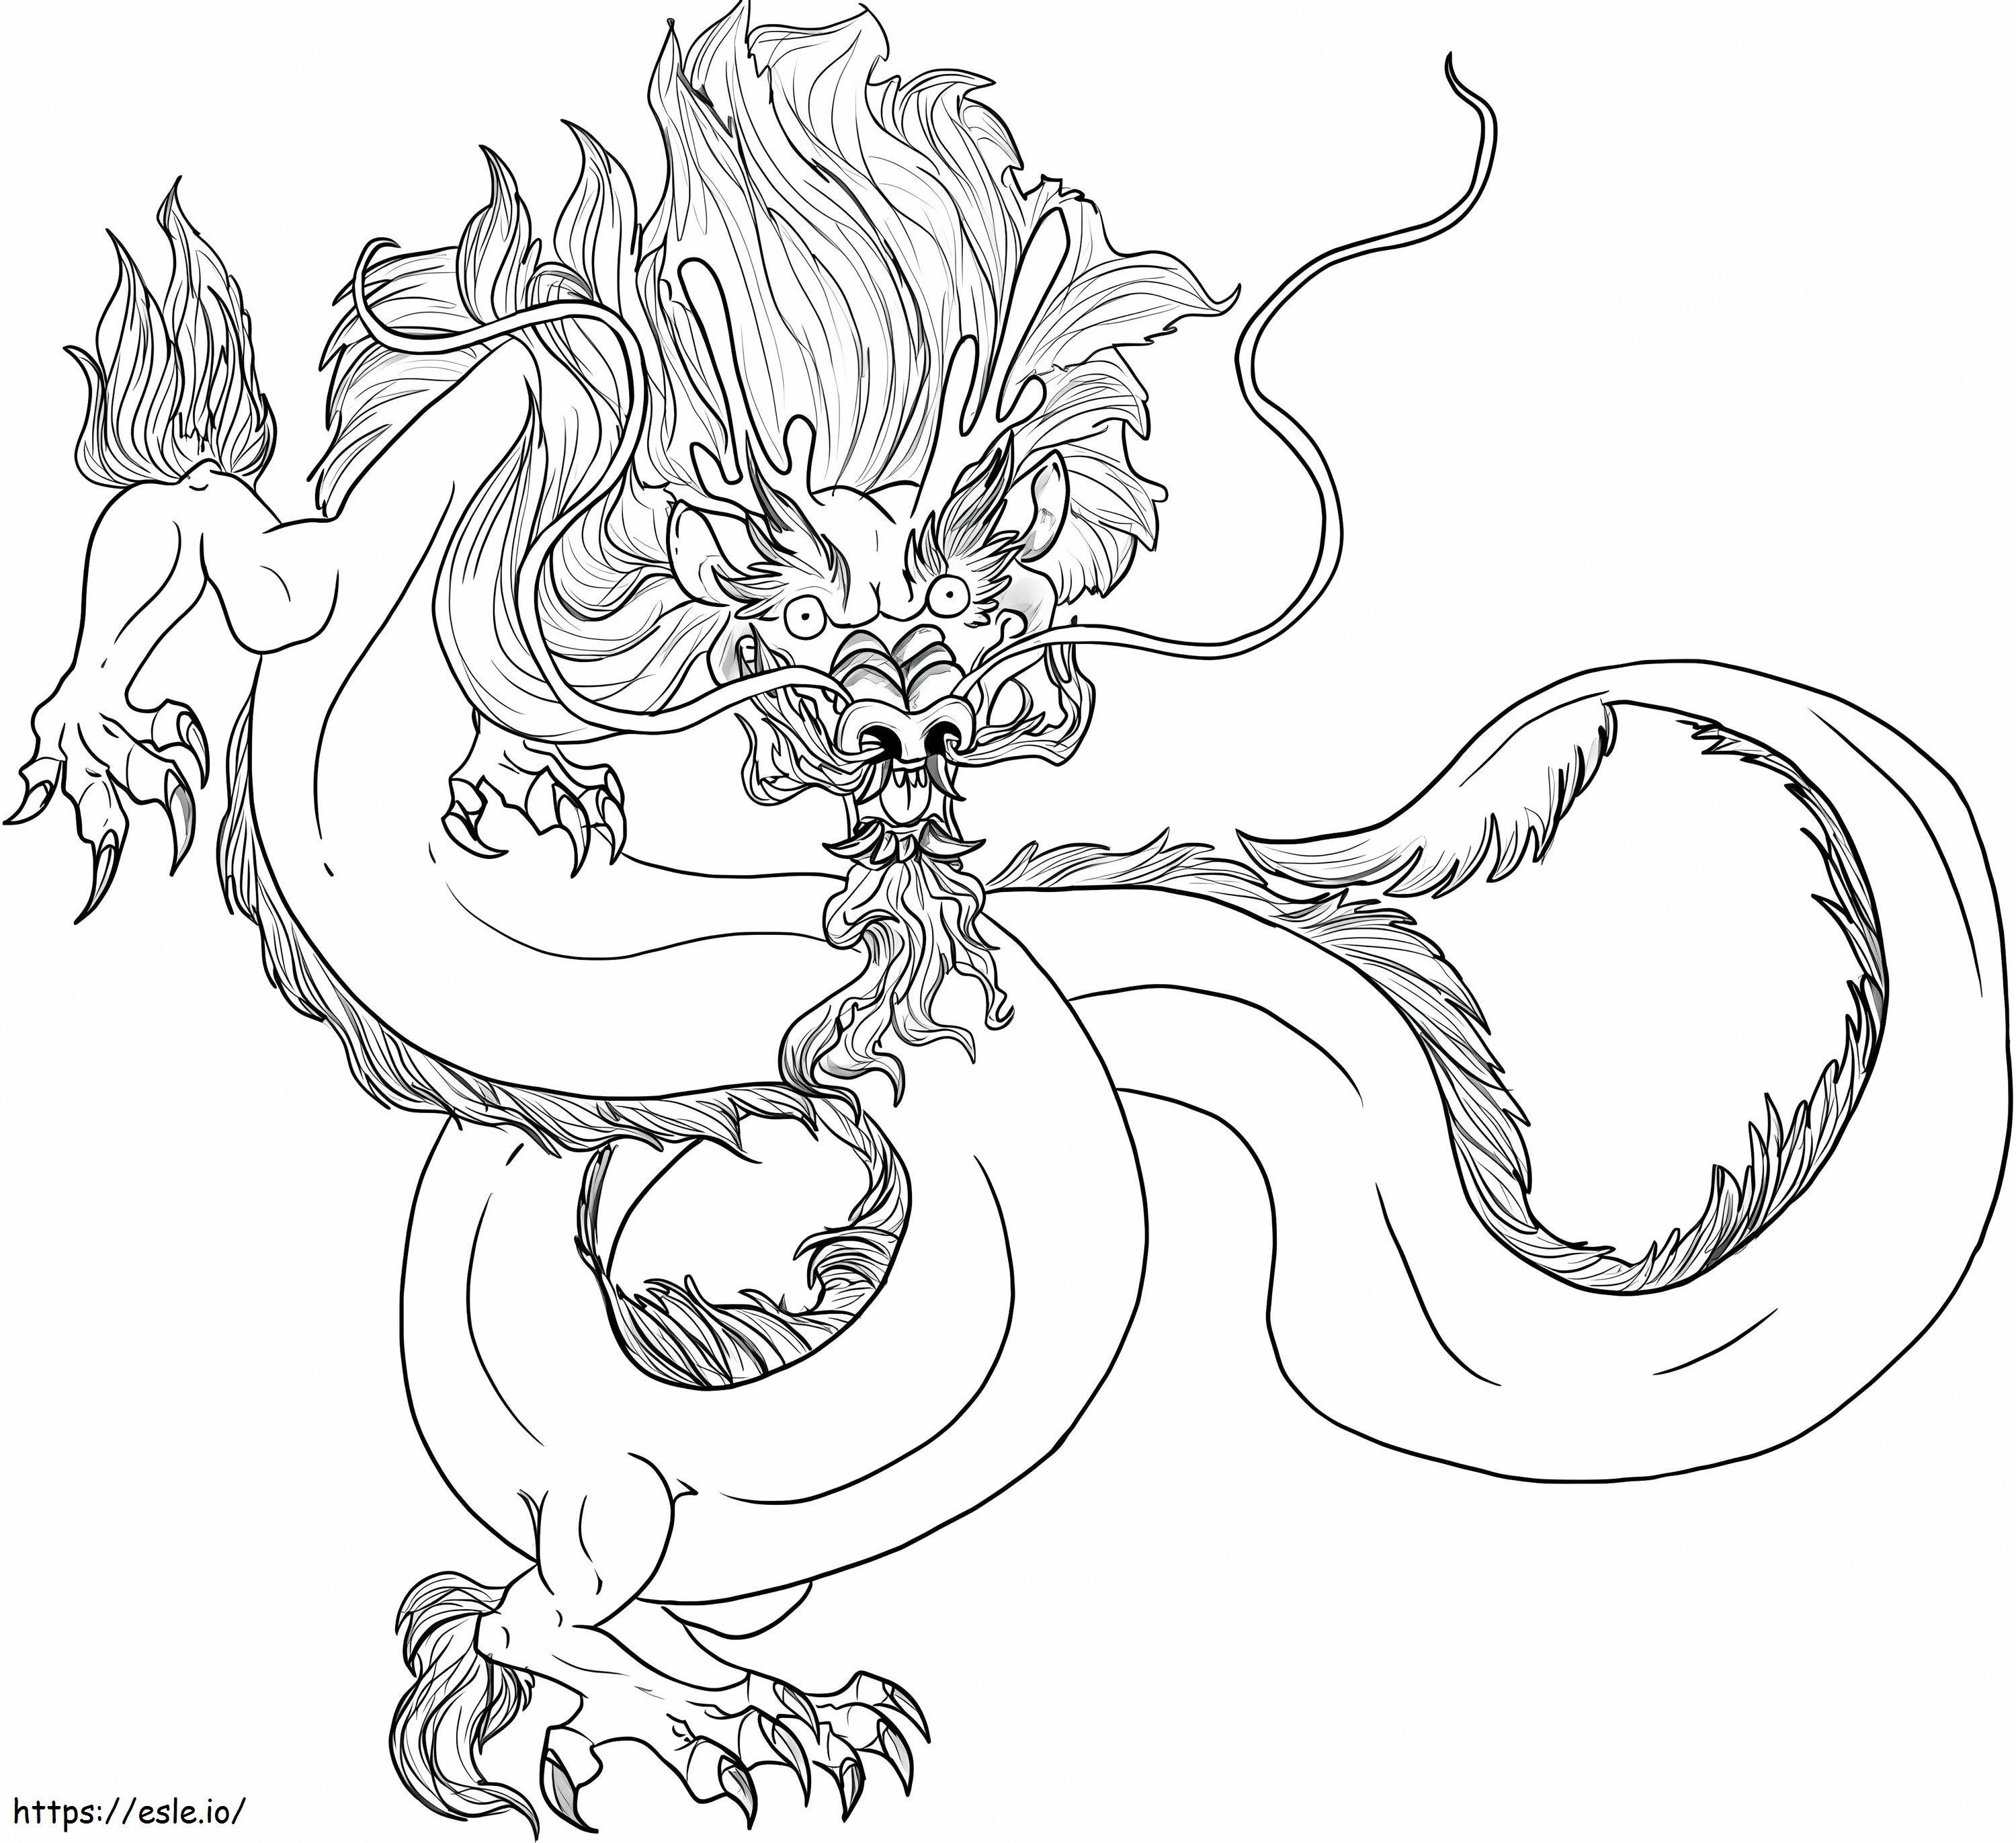 Dragón chino aterrador para colorear